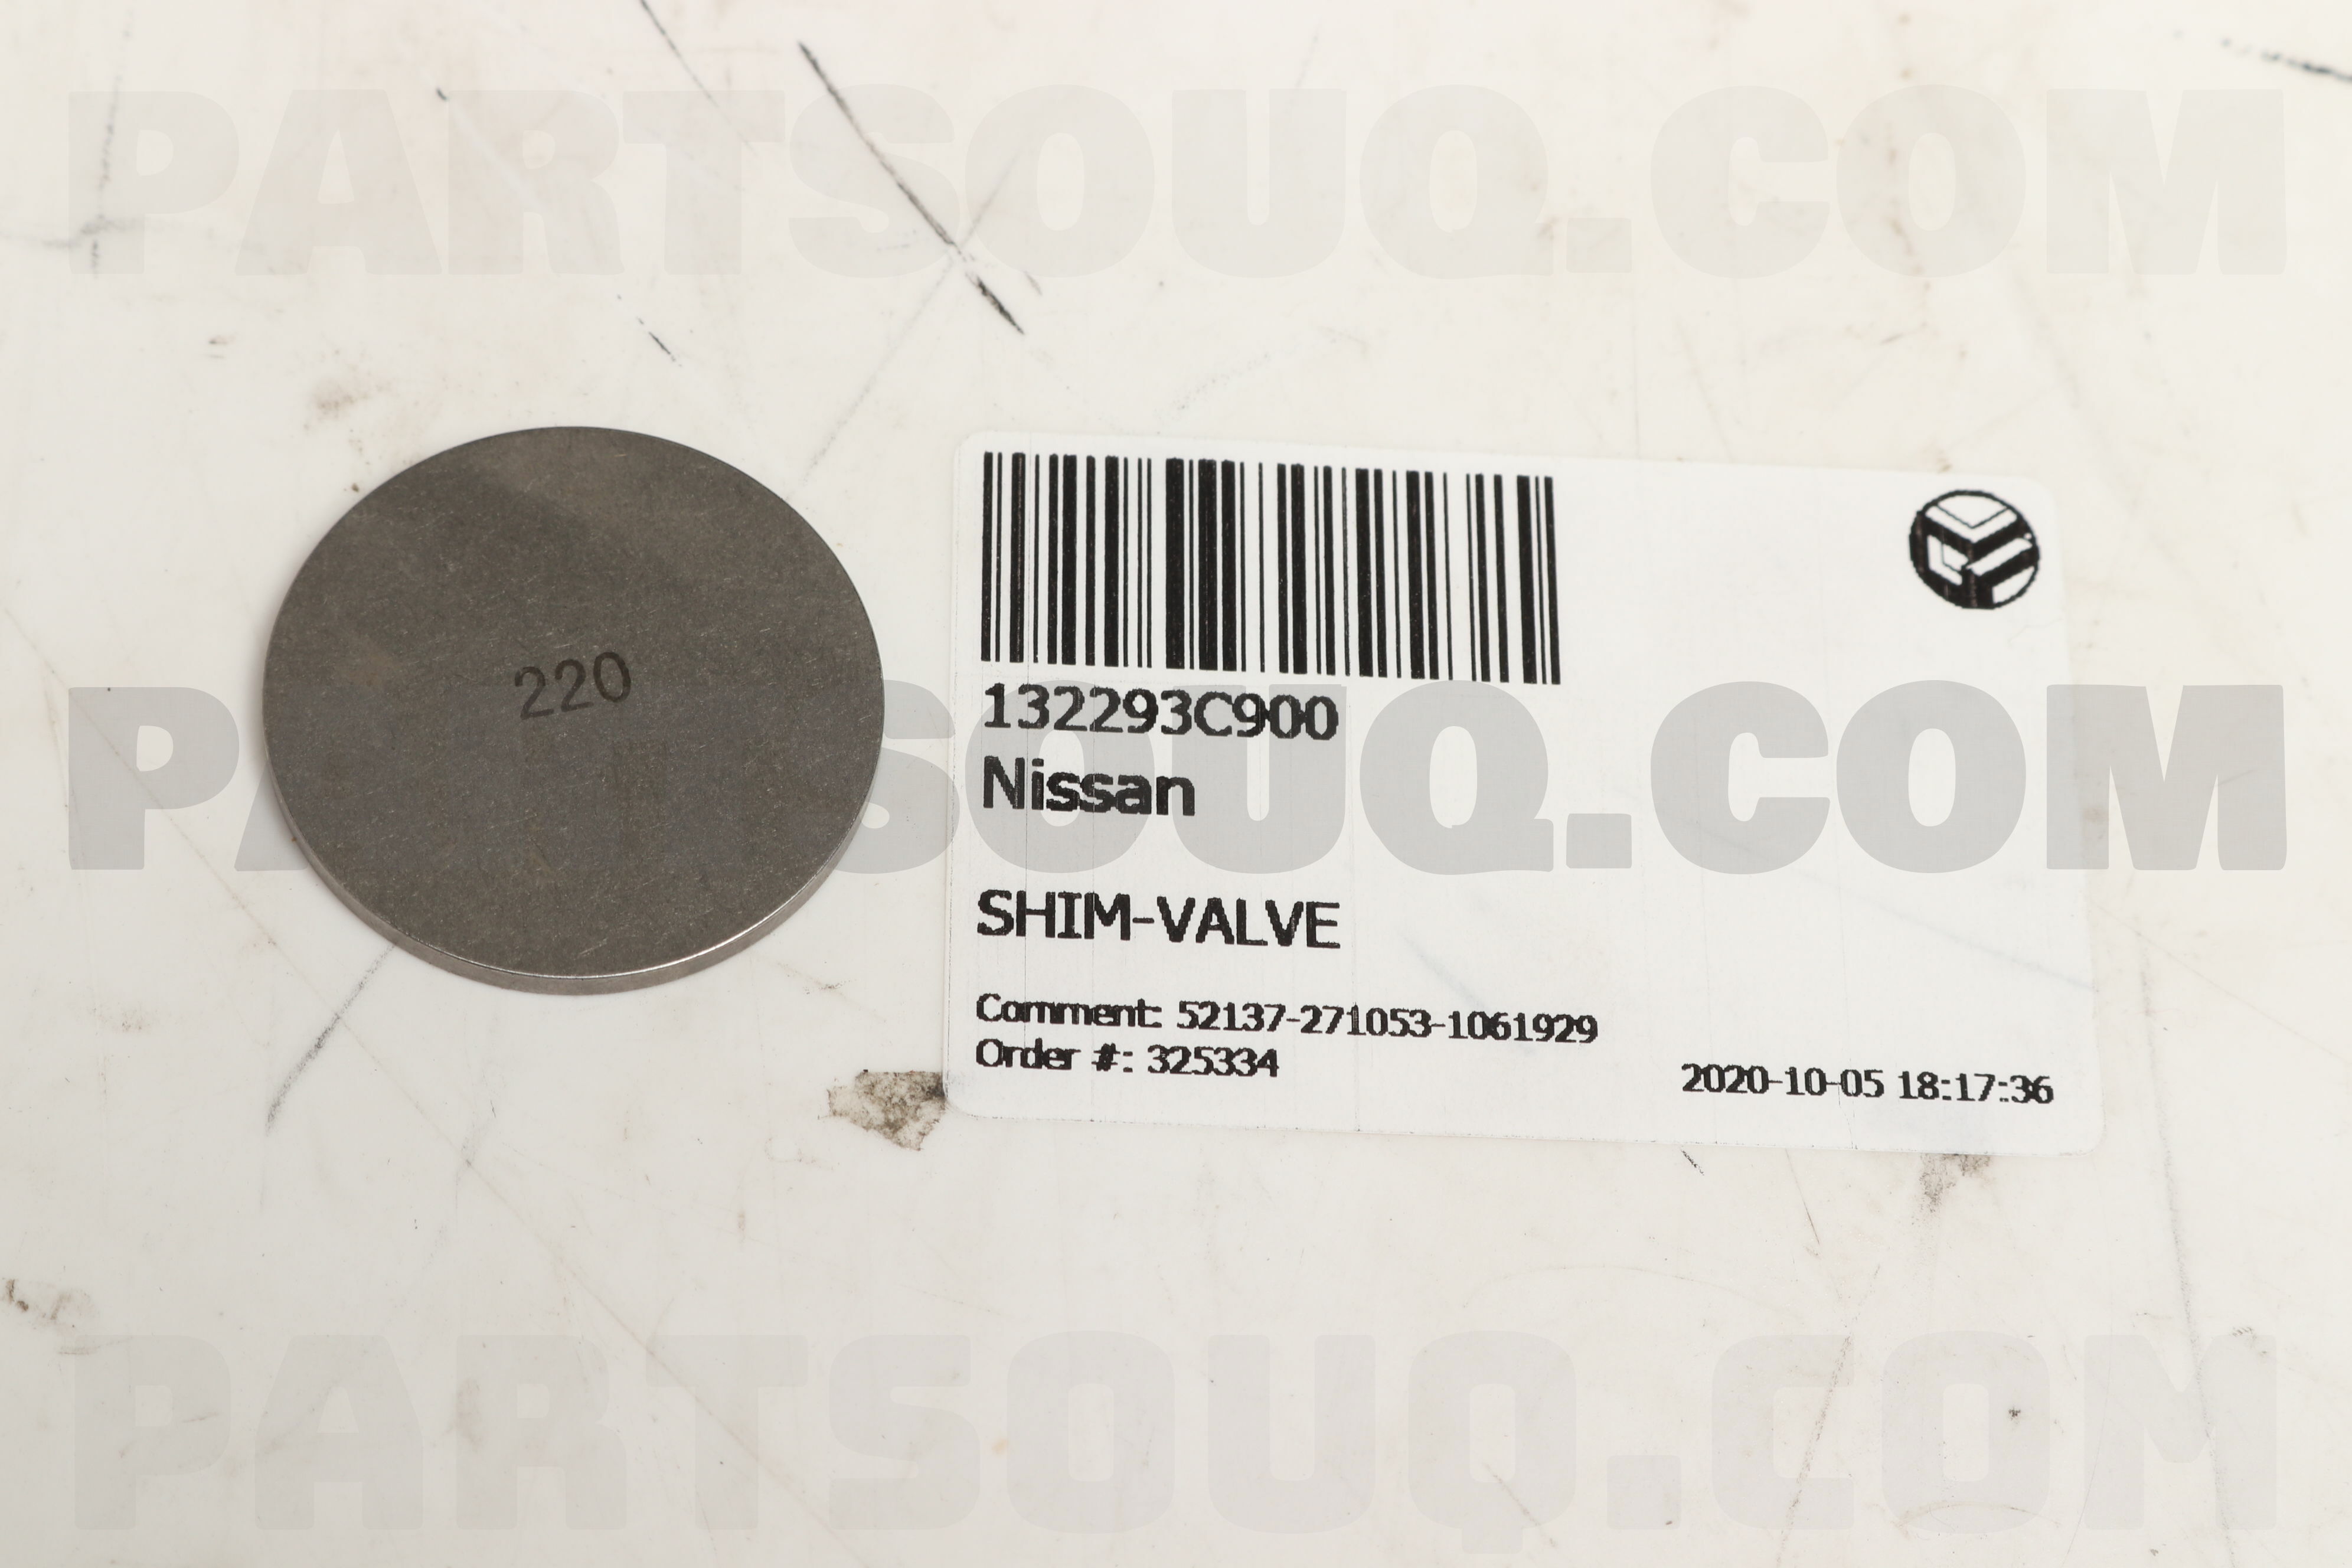 SHIM-VALVE 132293C900 | Nissan Parts | PartSouq